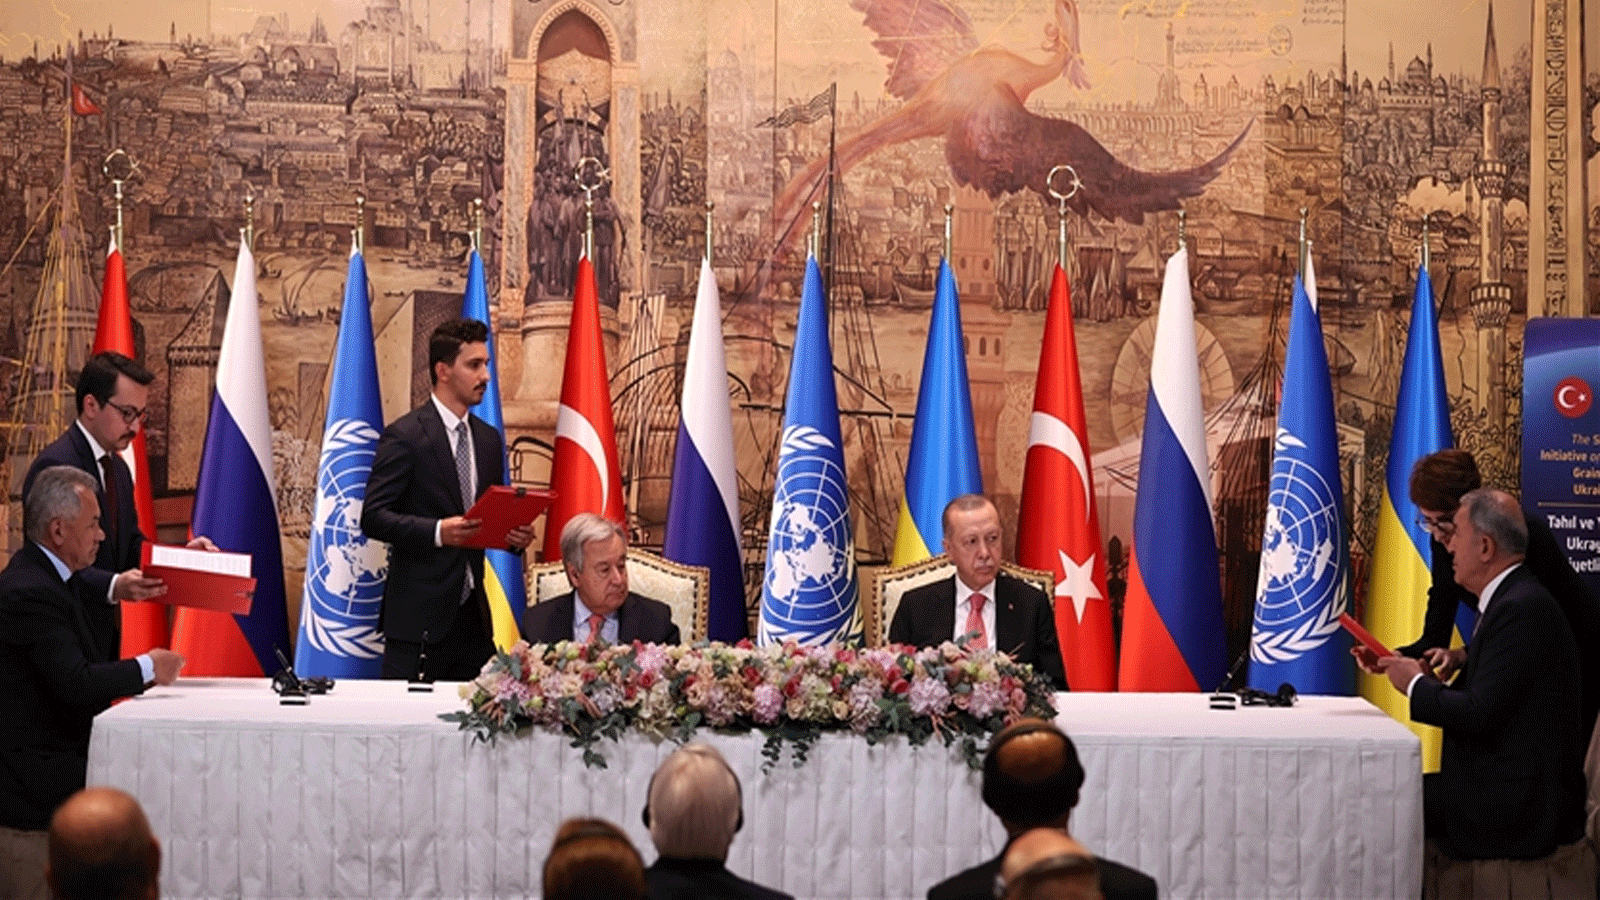  الرئيس التركي رجب طيب أردوغان (إلى اليمين) والأمين العام للأمم المتحدة أنطونيو غوتيريش (يسار) يحضران حفل توقيع الاتفاقية، التي تفتح صادرات الحبوب الأوكرانية، في اسطنبول، تركيا. 22 تموز\ يوليو 2022.(الأناضول)